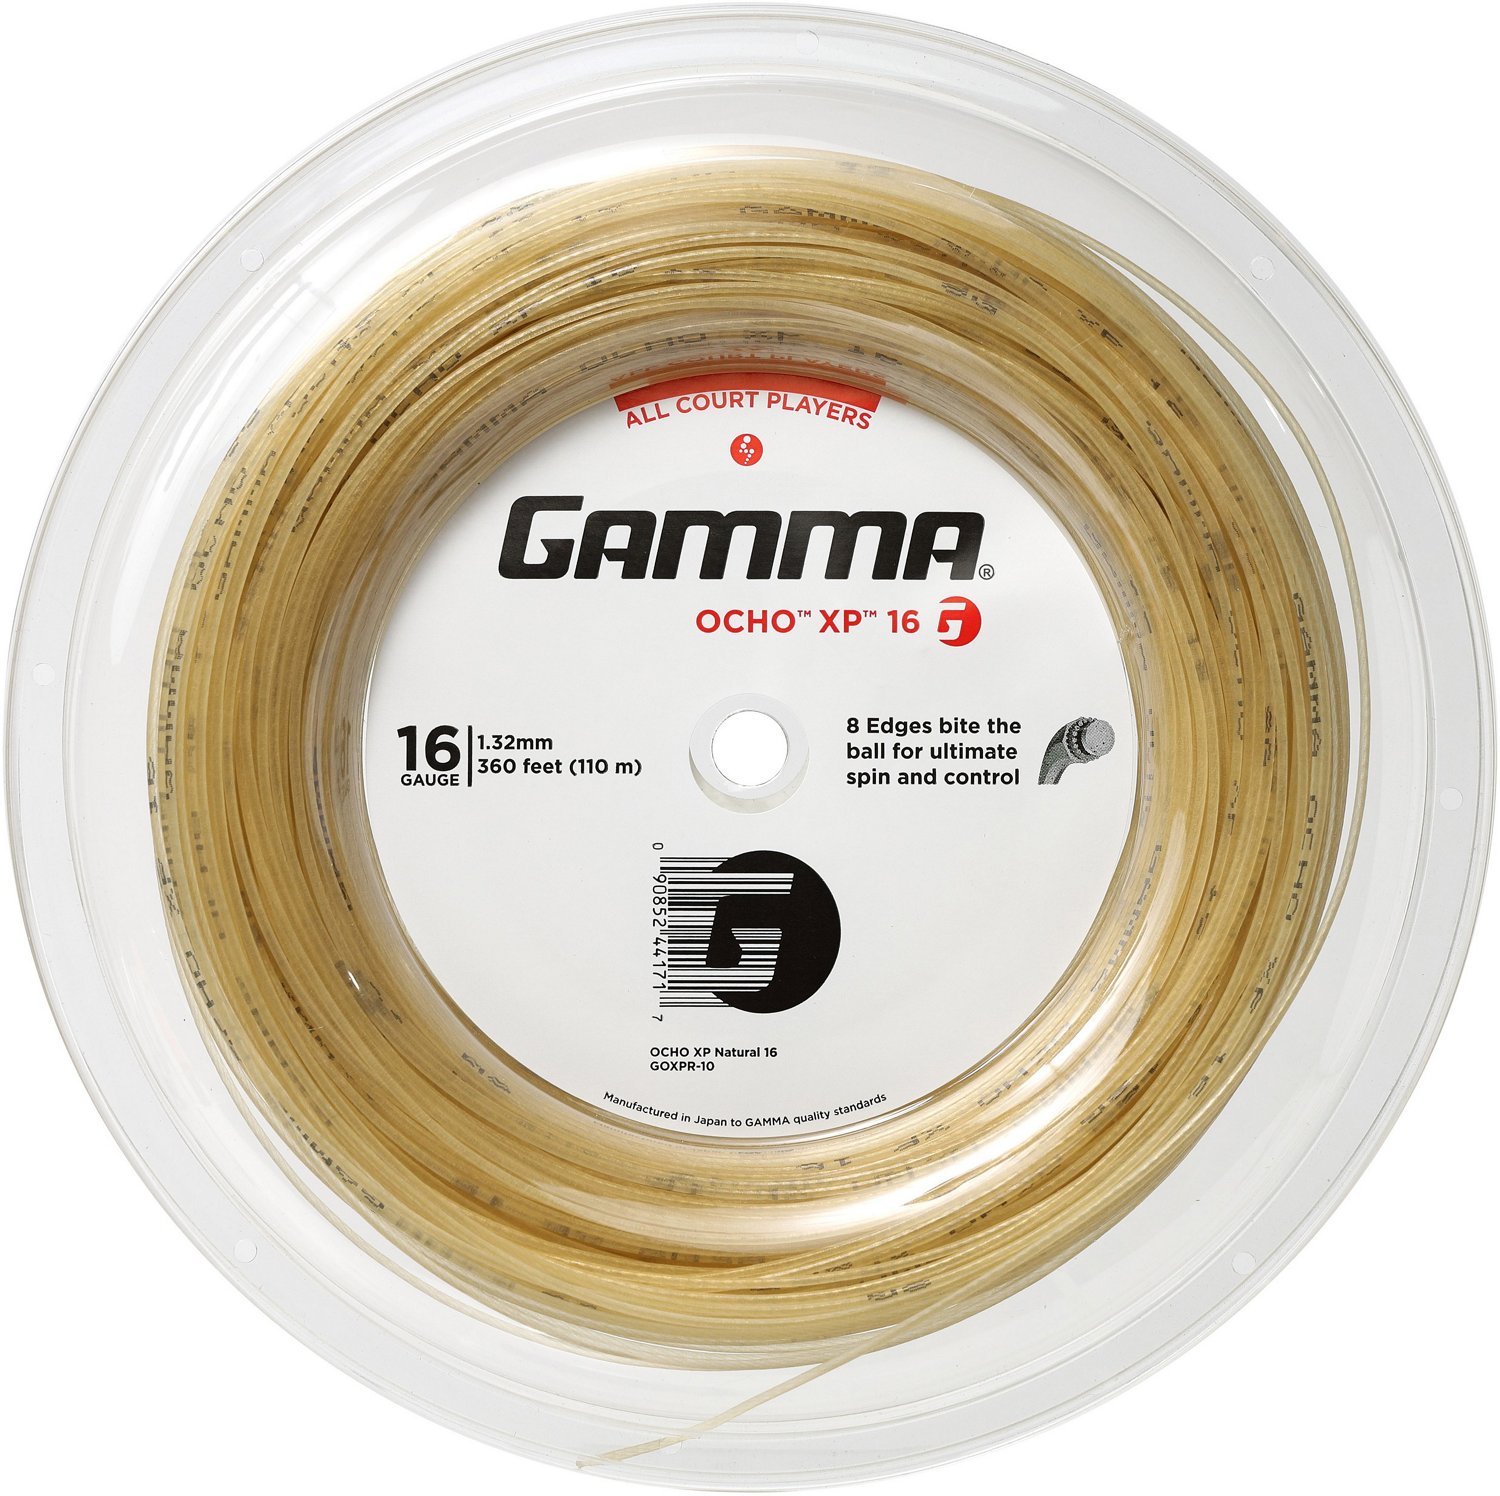 Gamma Ocho 660-foot Tennis String Reel